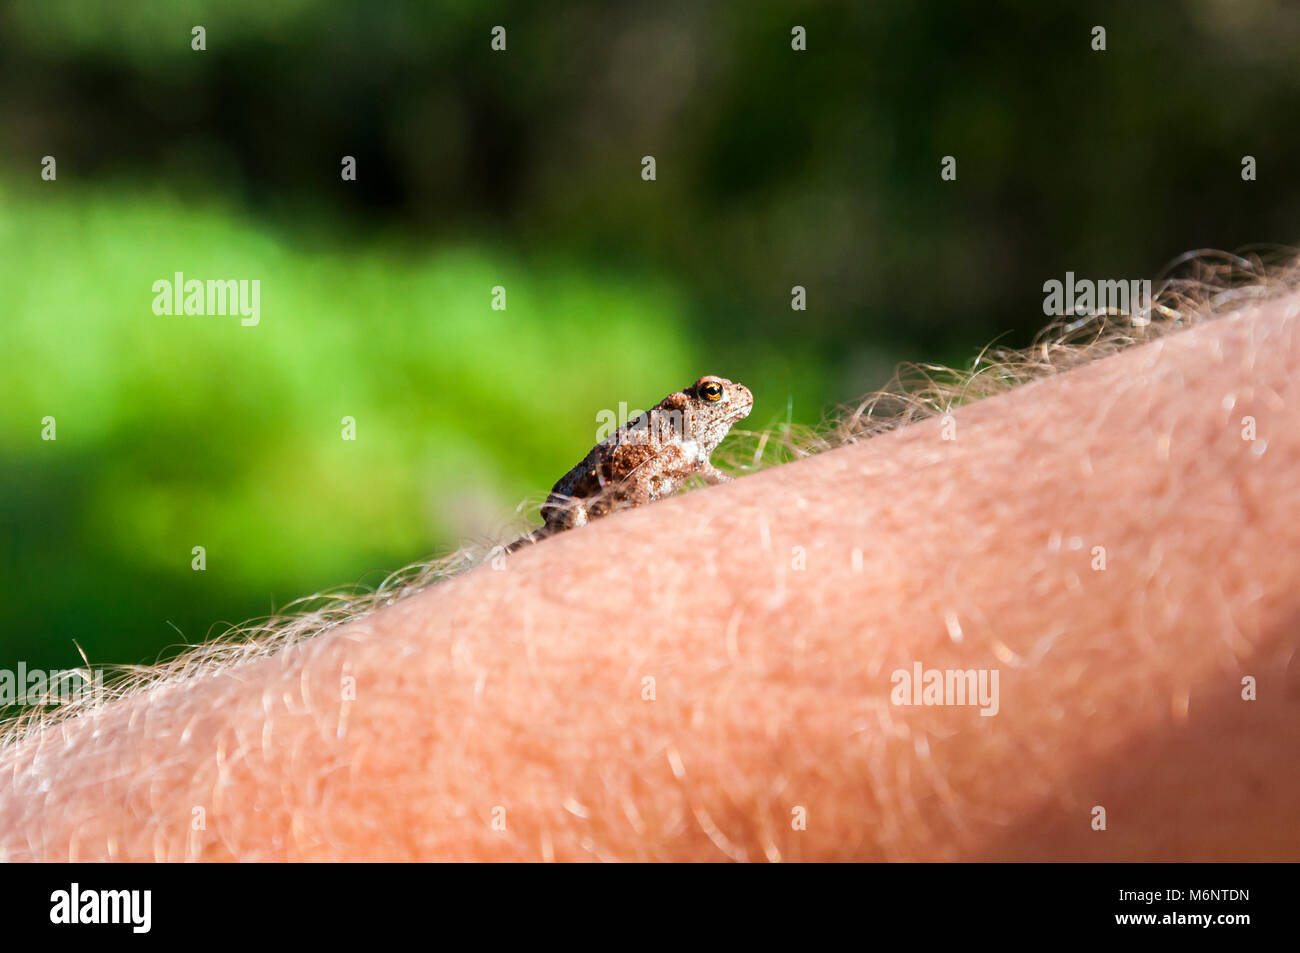 Piccolo anfibio rospo comune salendo sulla pelle vellutata di uomo di braccio Foto Stock